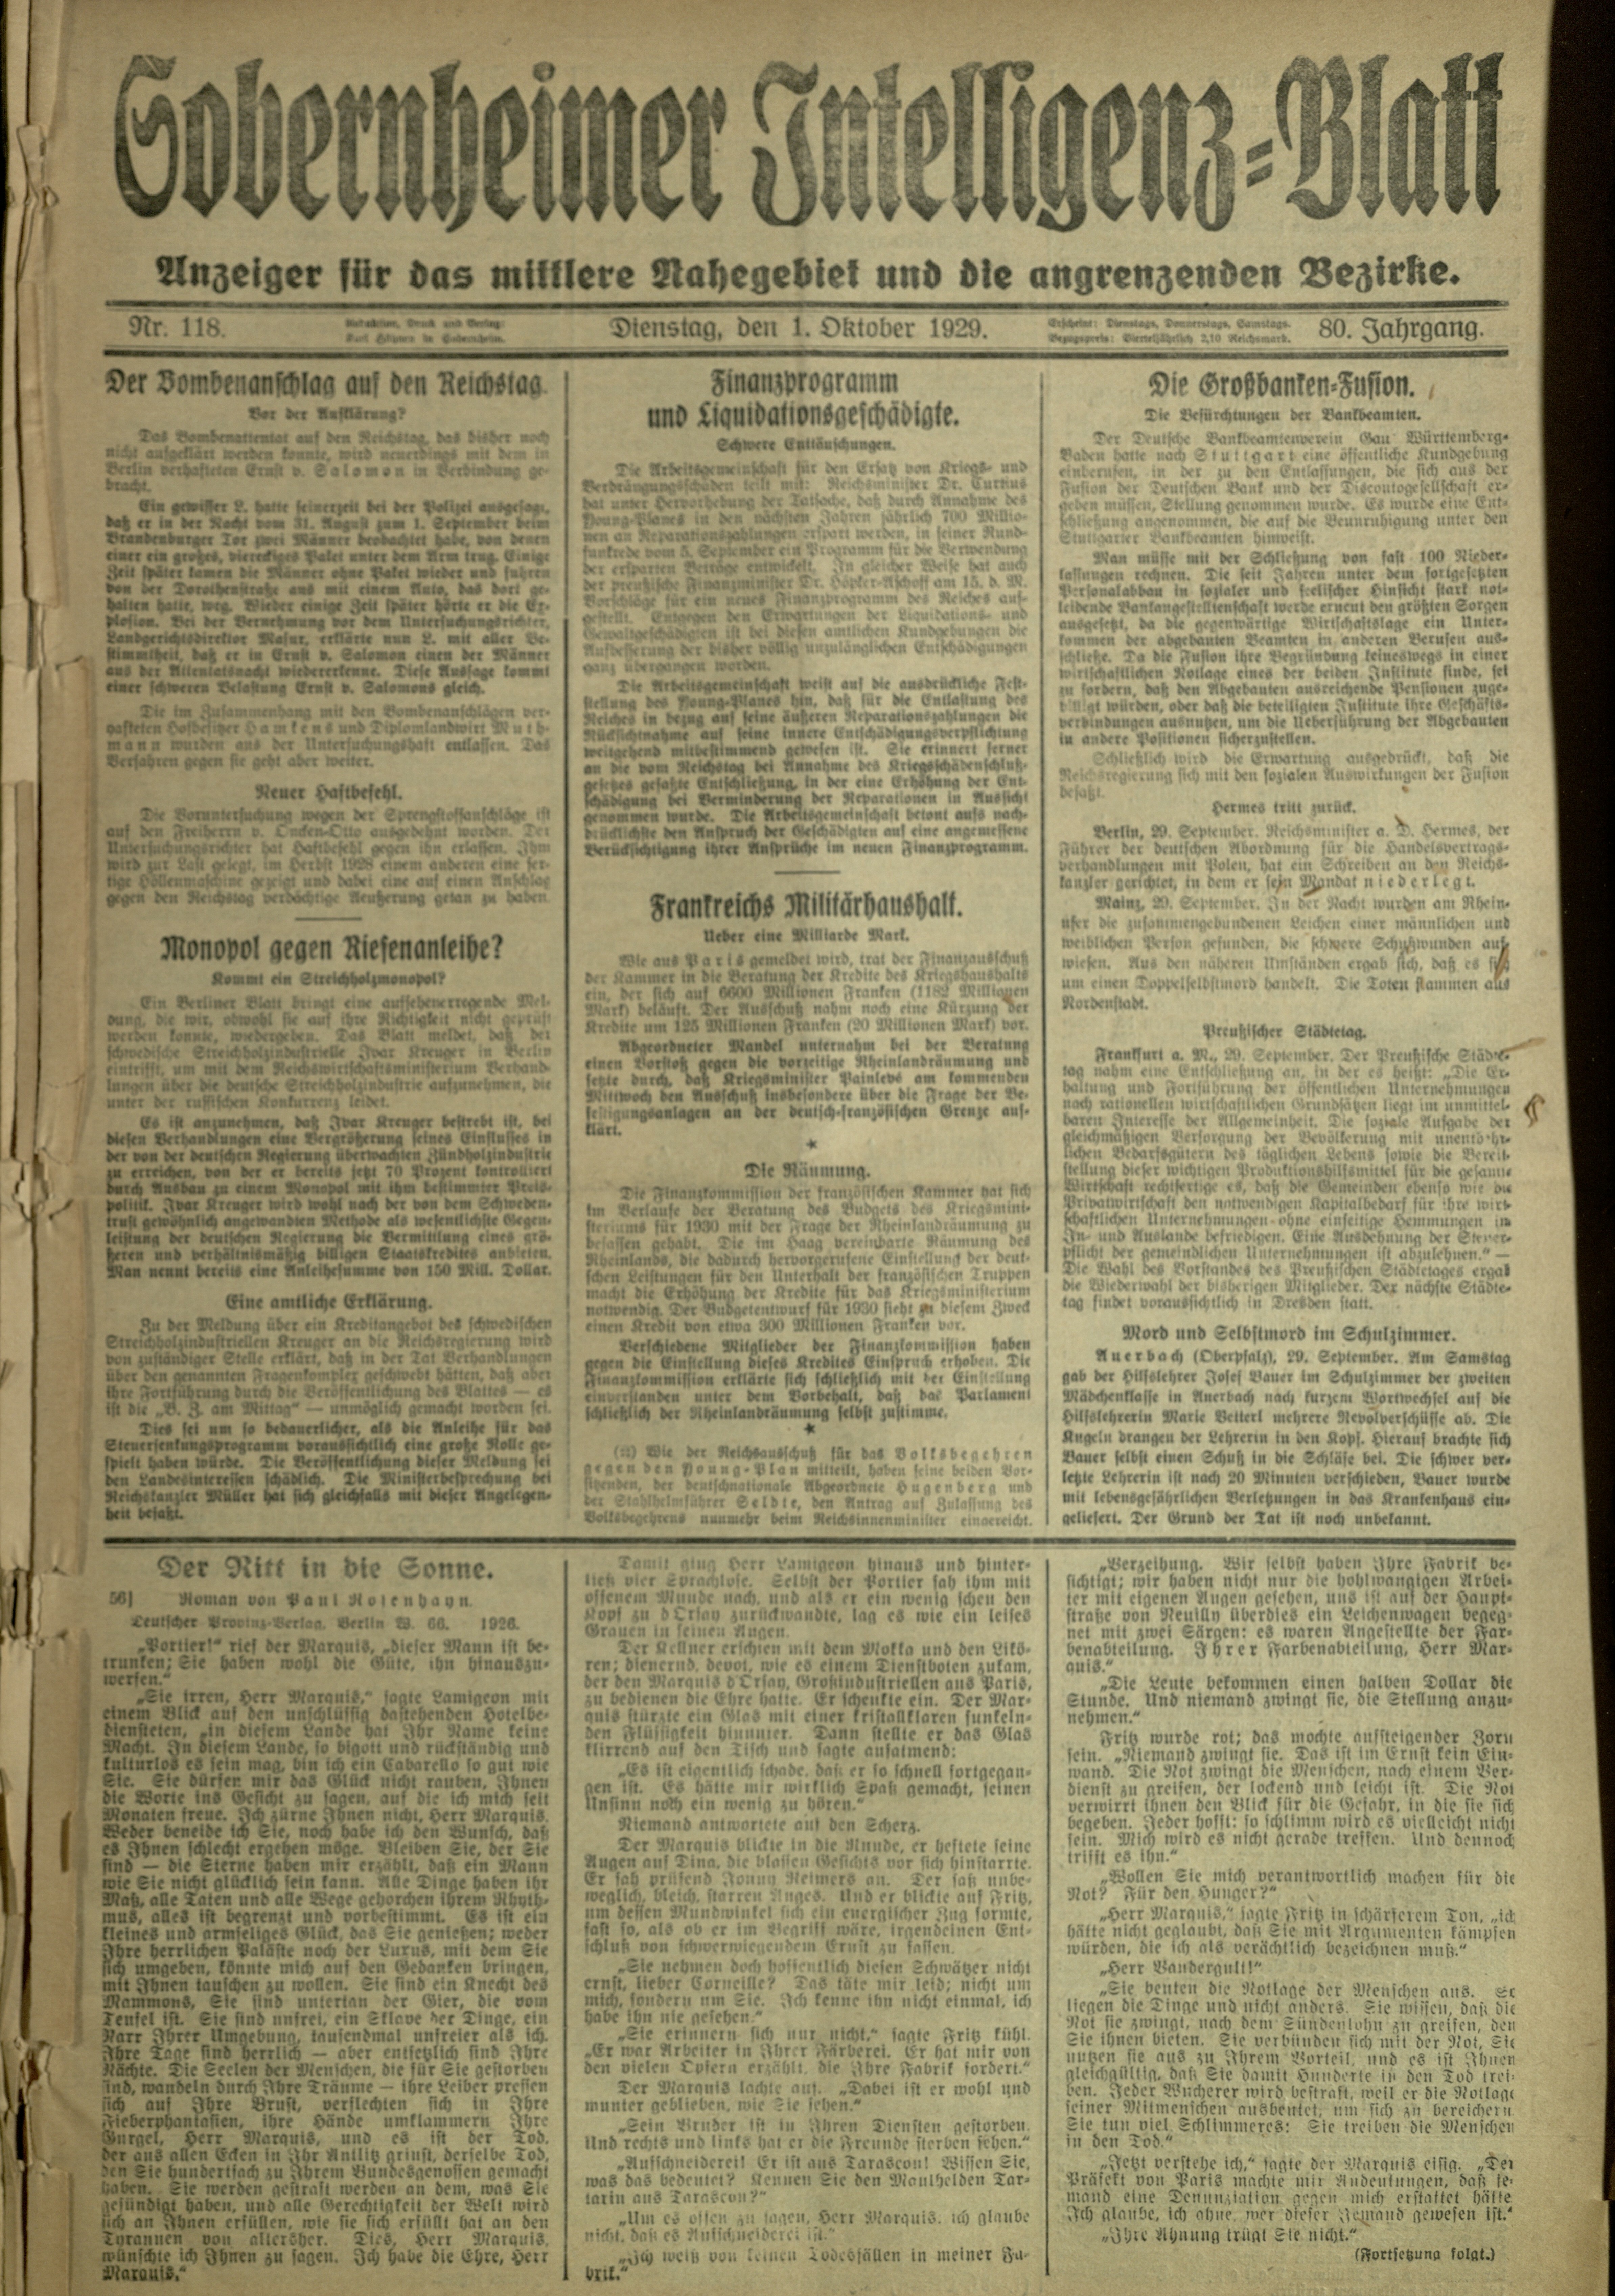 Zeitung: Sobernheimer Intelligenzblatt; Oktober 1929, Jg. 80 Nr. 118 (Heimatmuseum Bad Sobernheim CC BY-NC-SA)